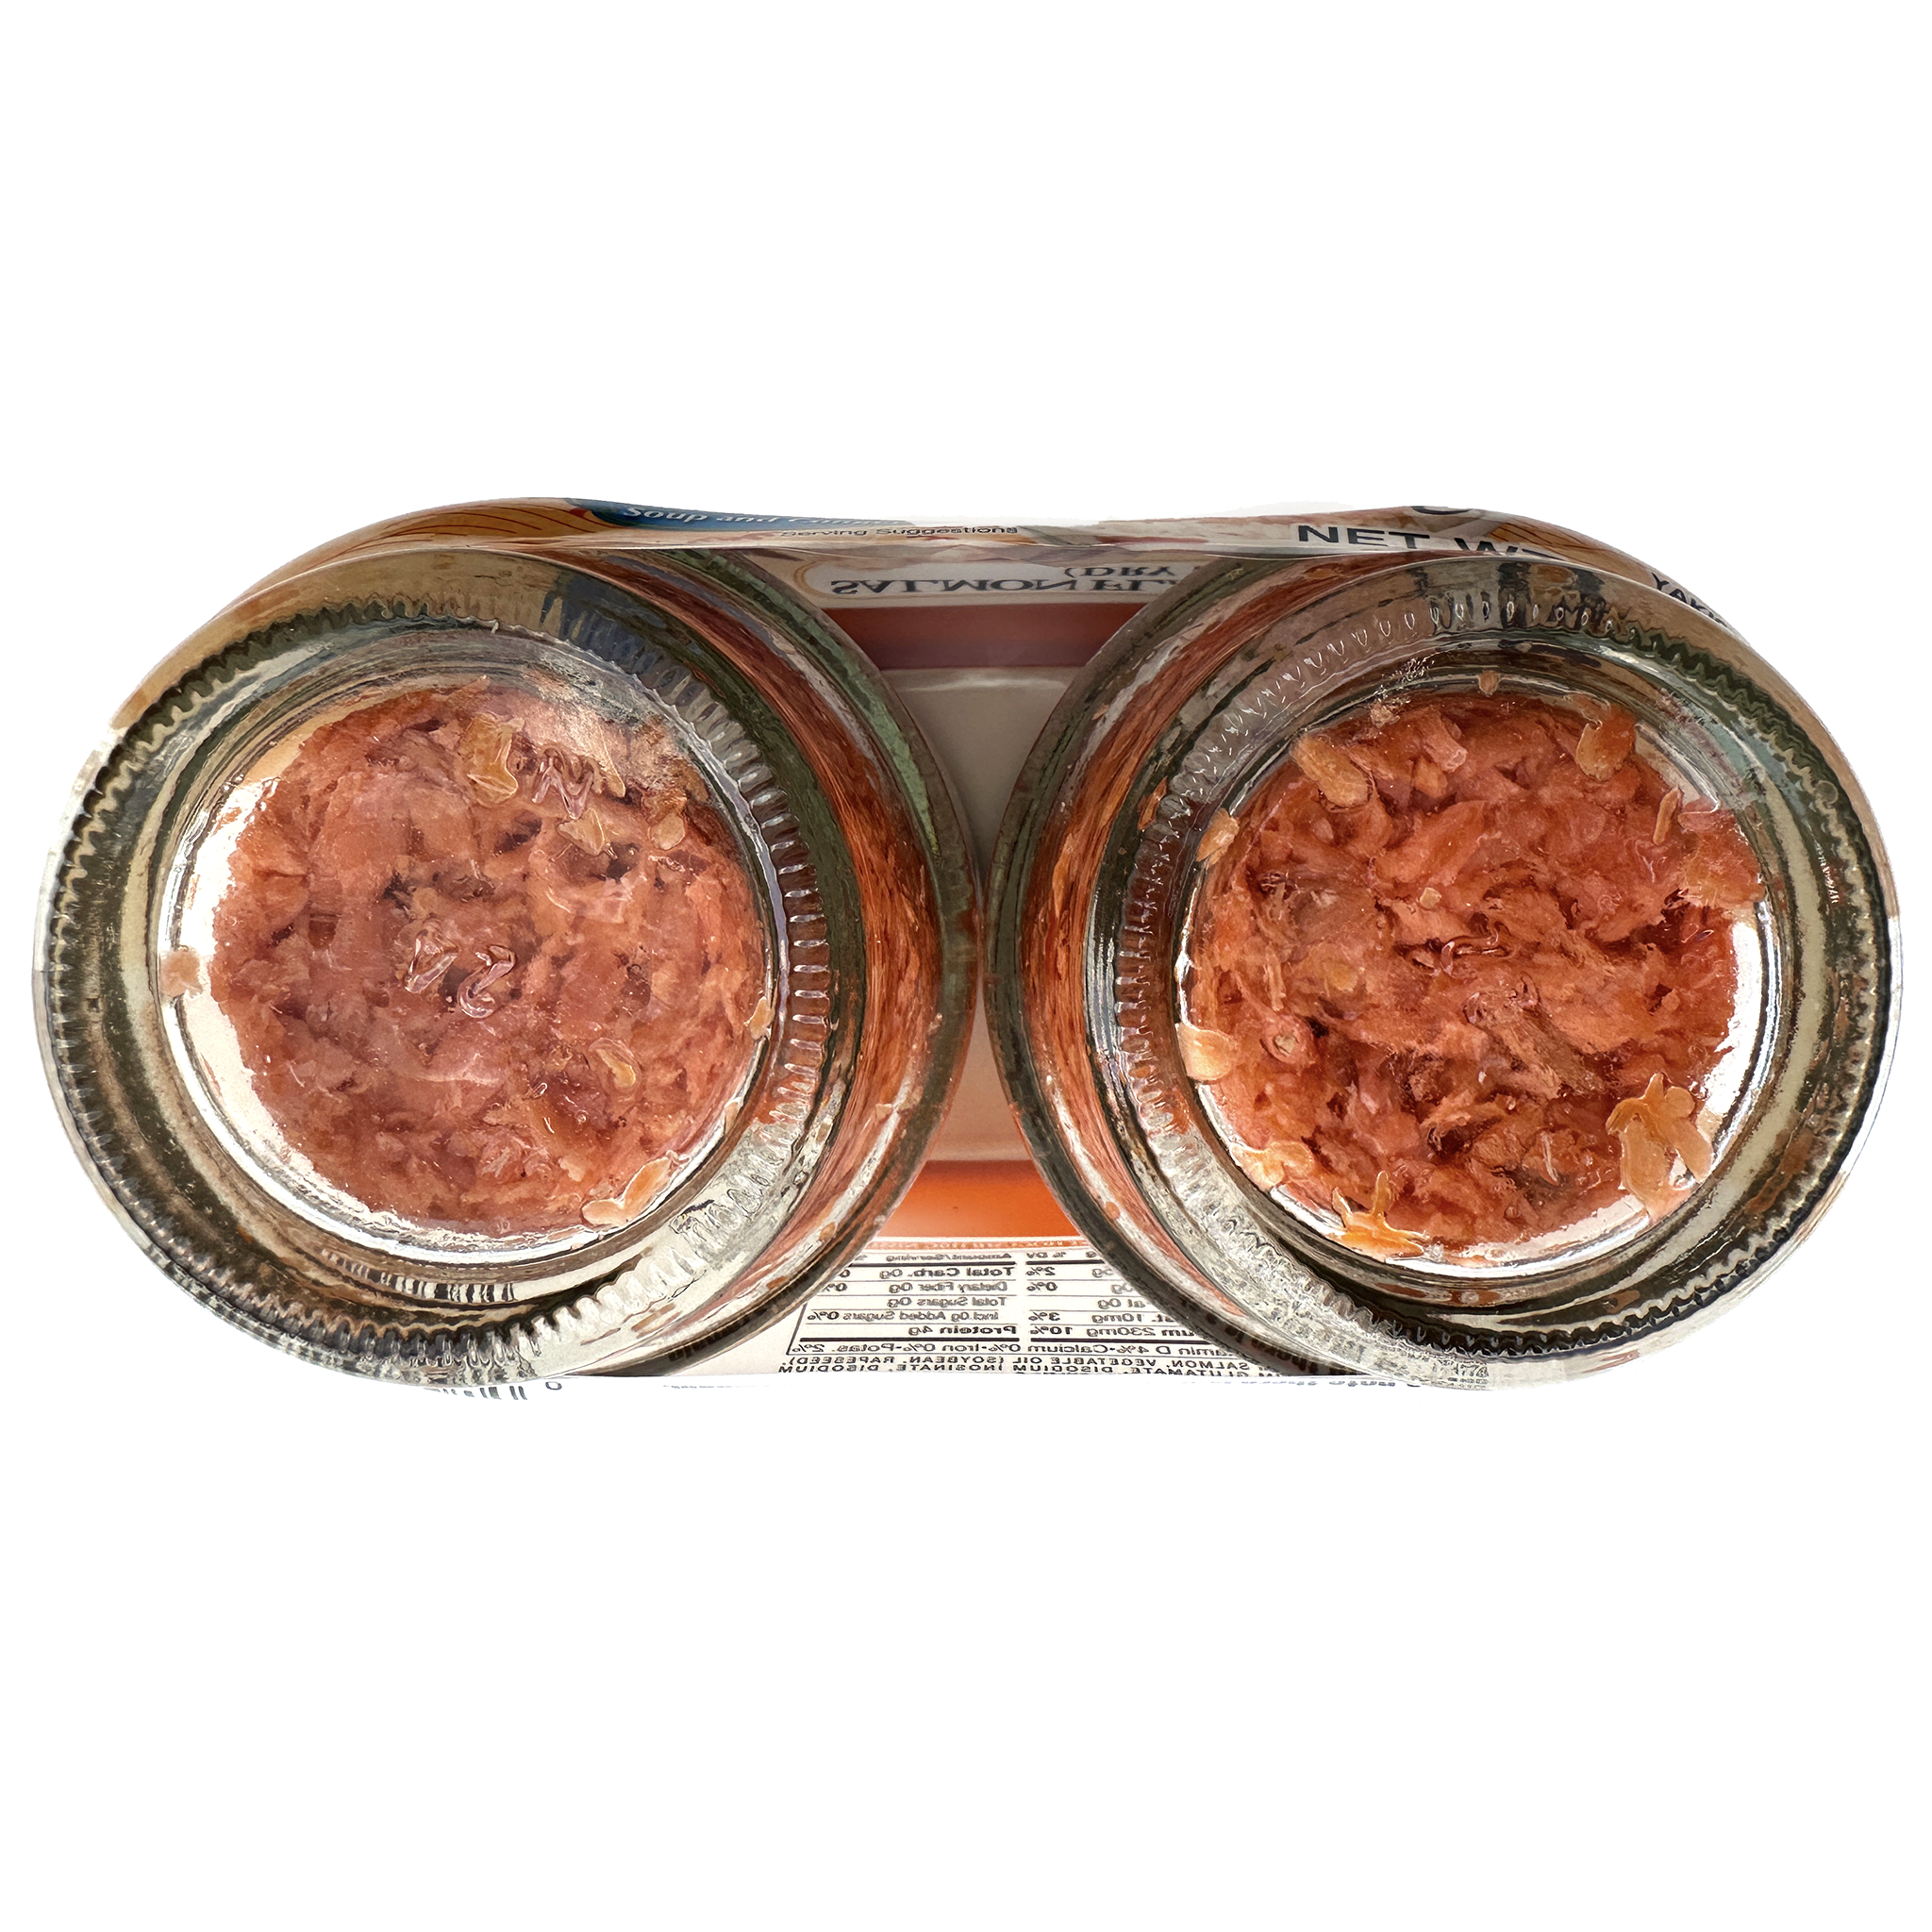 Nordic Catch Perfect Salmon Nigiri Sushi Kit for 2 - Icelandic Salmon (11oz Fillet), Pink